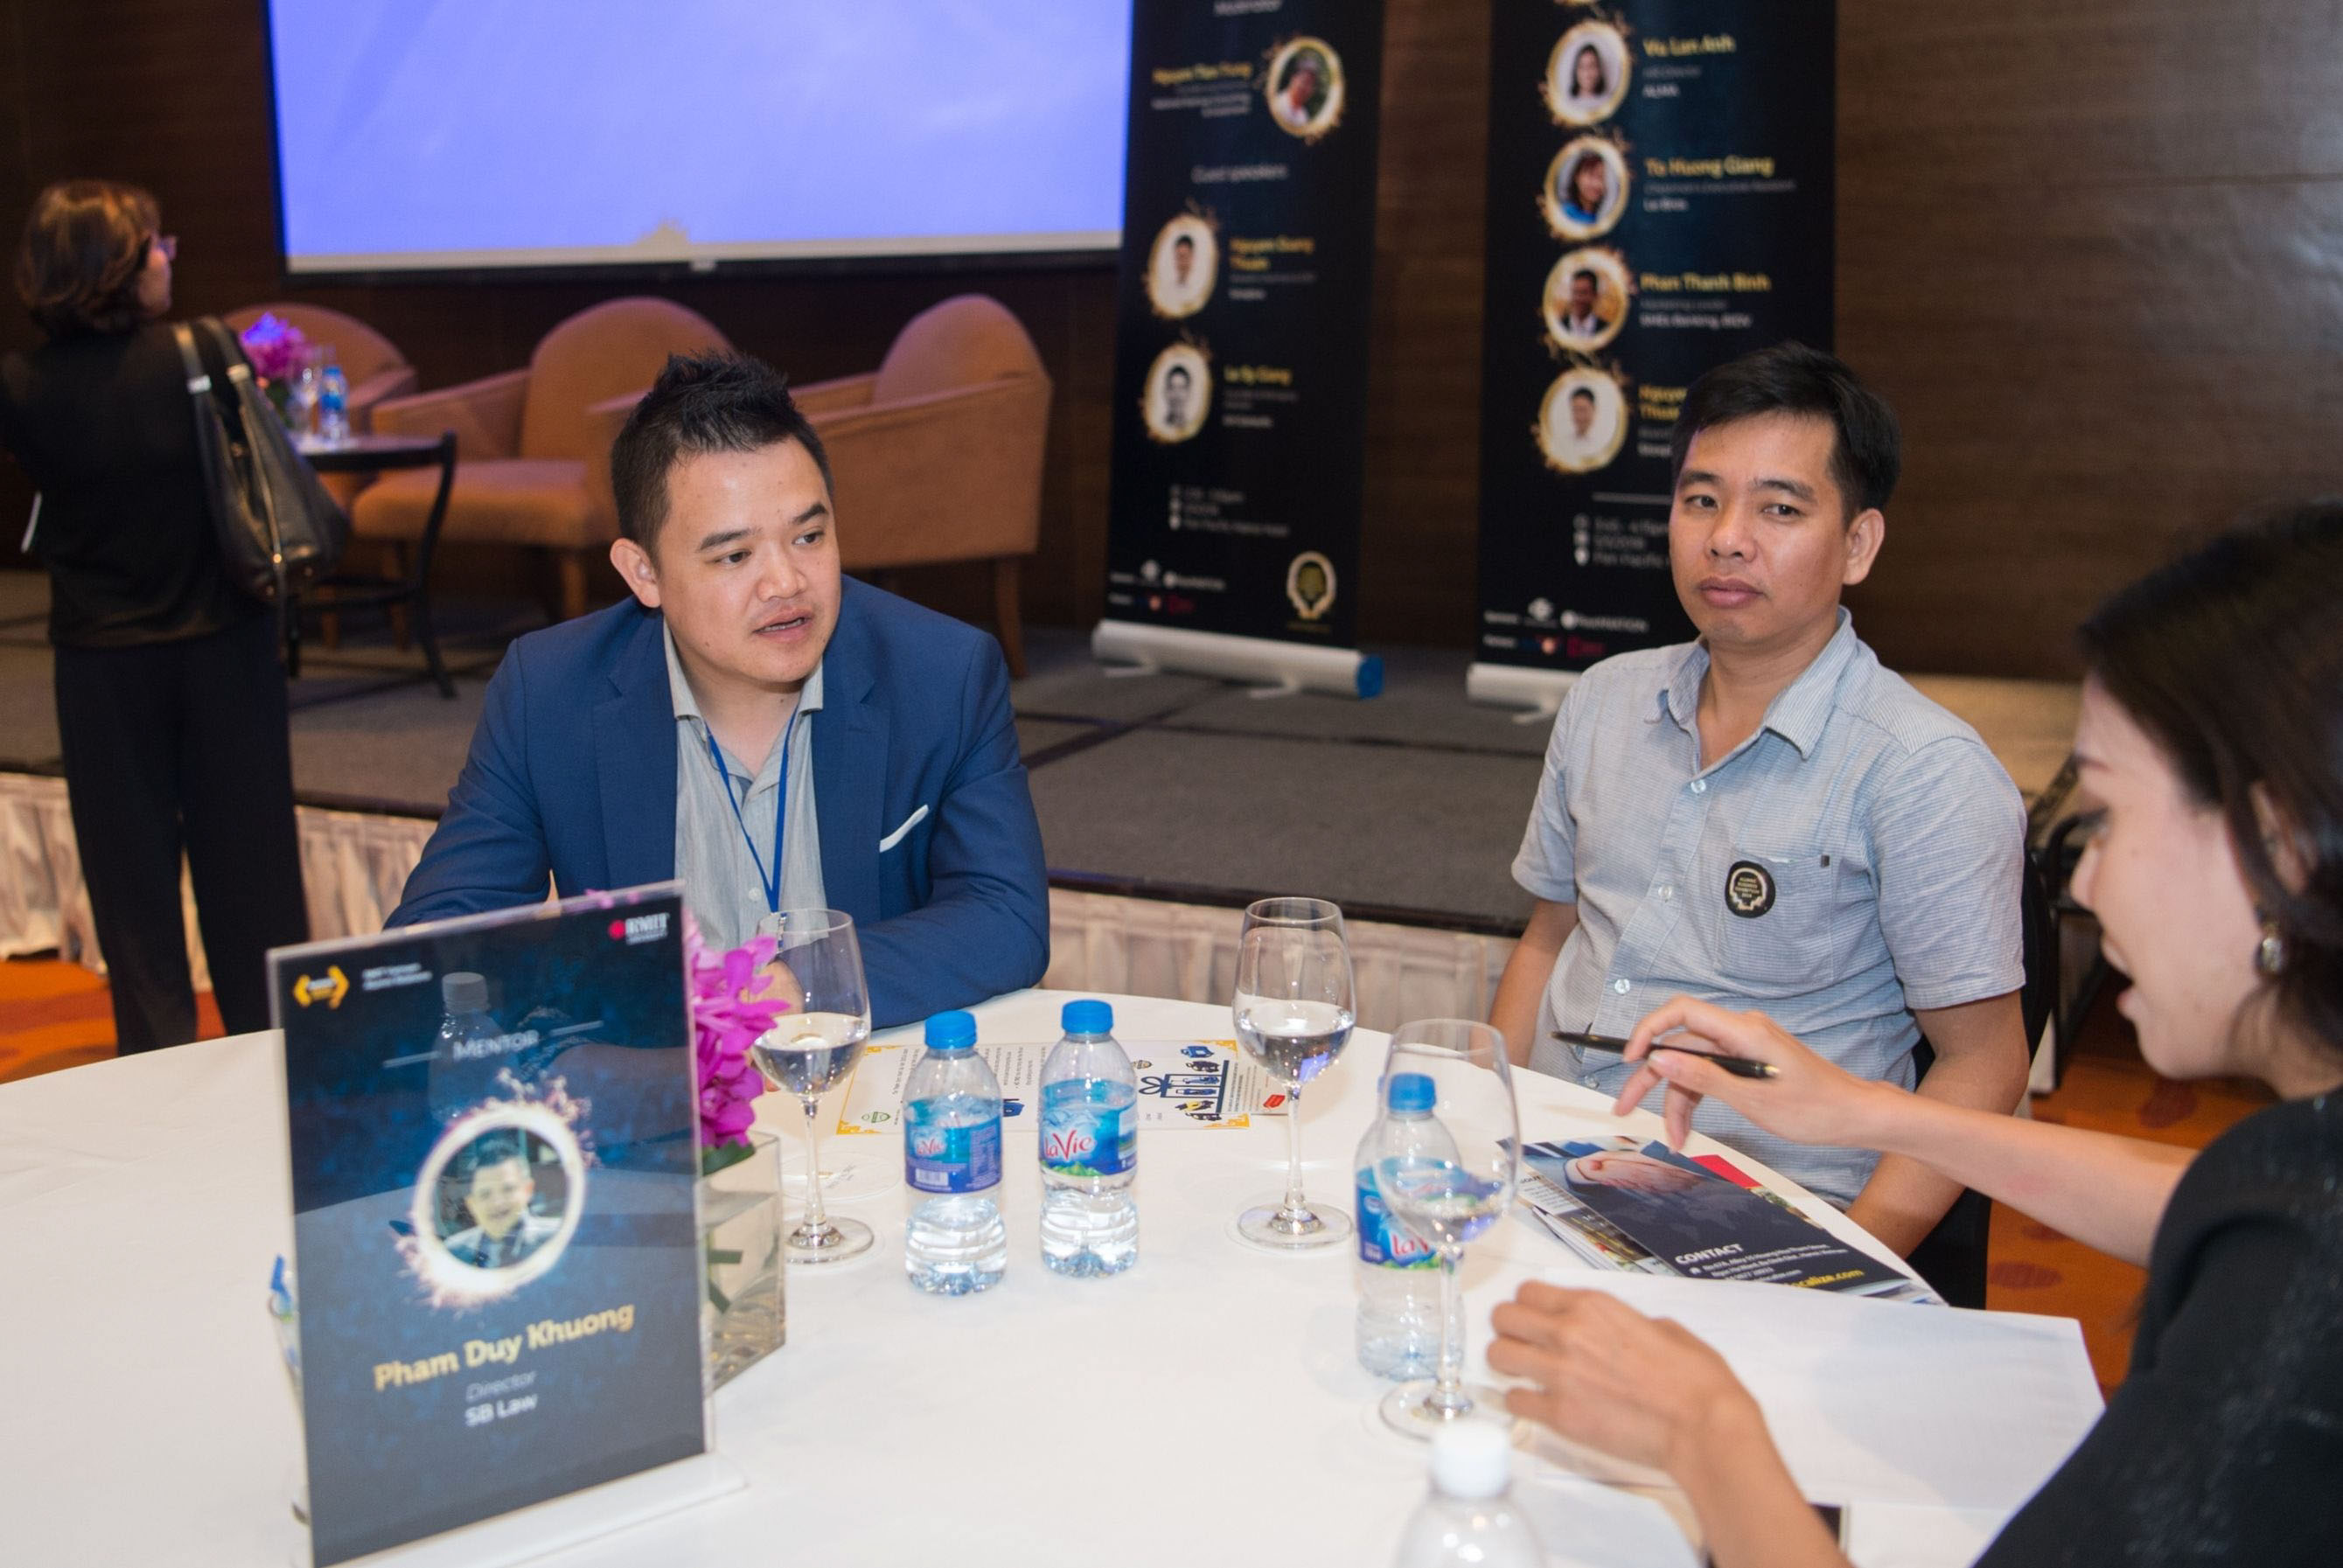 Ông Phạm Duy Khương (trái), Giám đốc Luật SB, chia sẻ kinh nghiệm trong phần Cố vấn nghề nghiệp nhanh tại triển lãm ở Hà Nội.